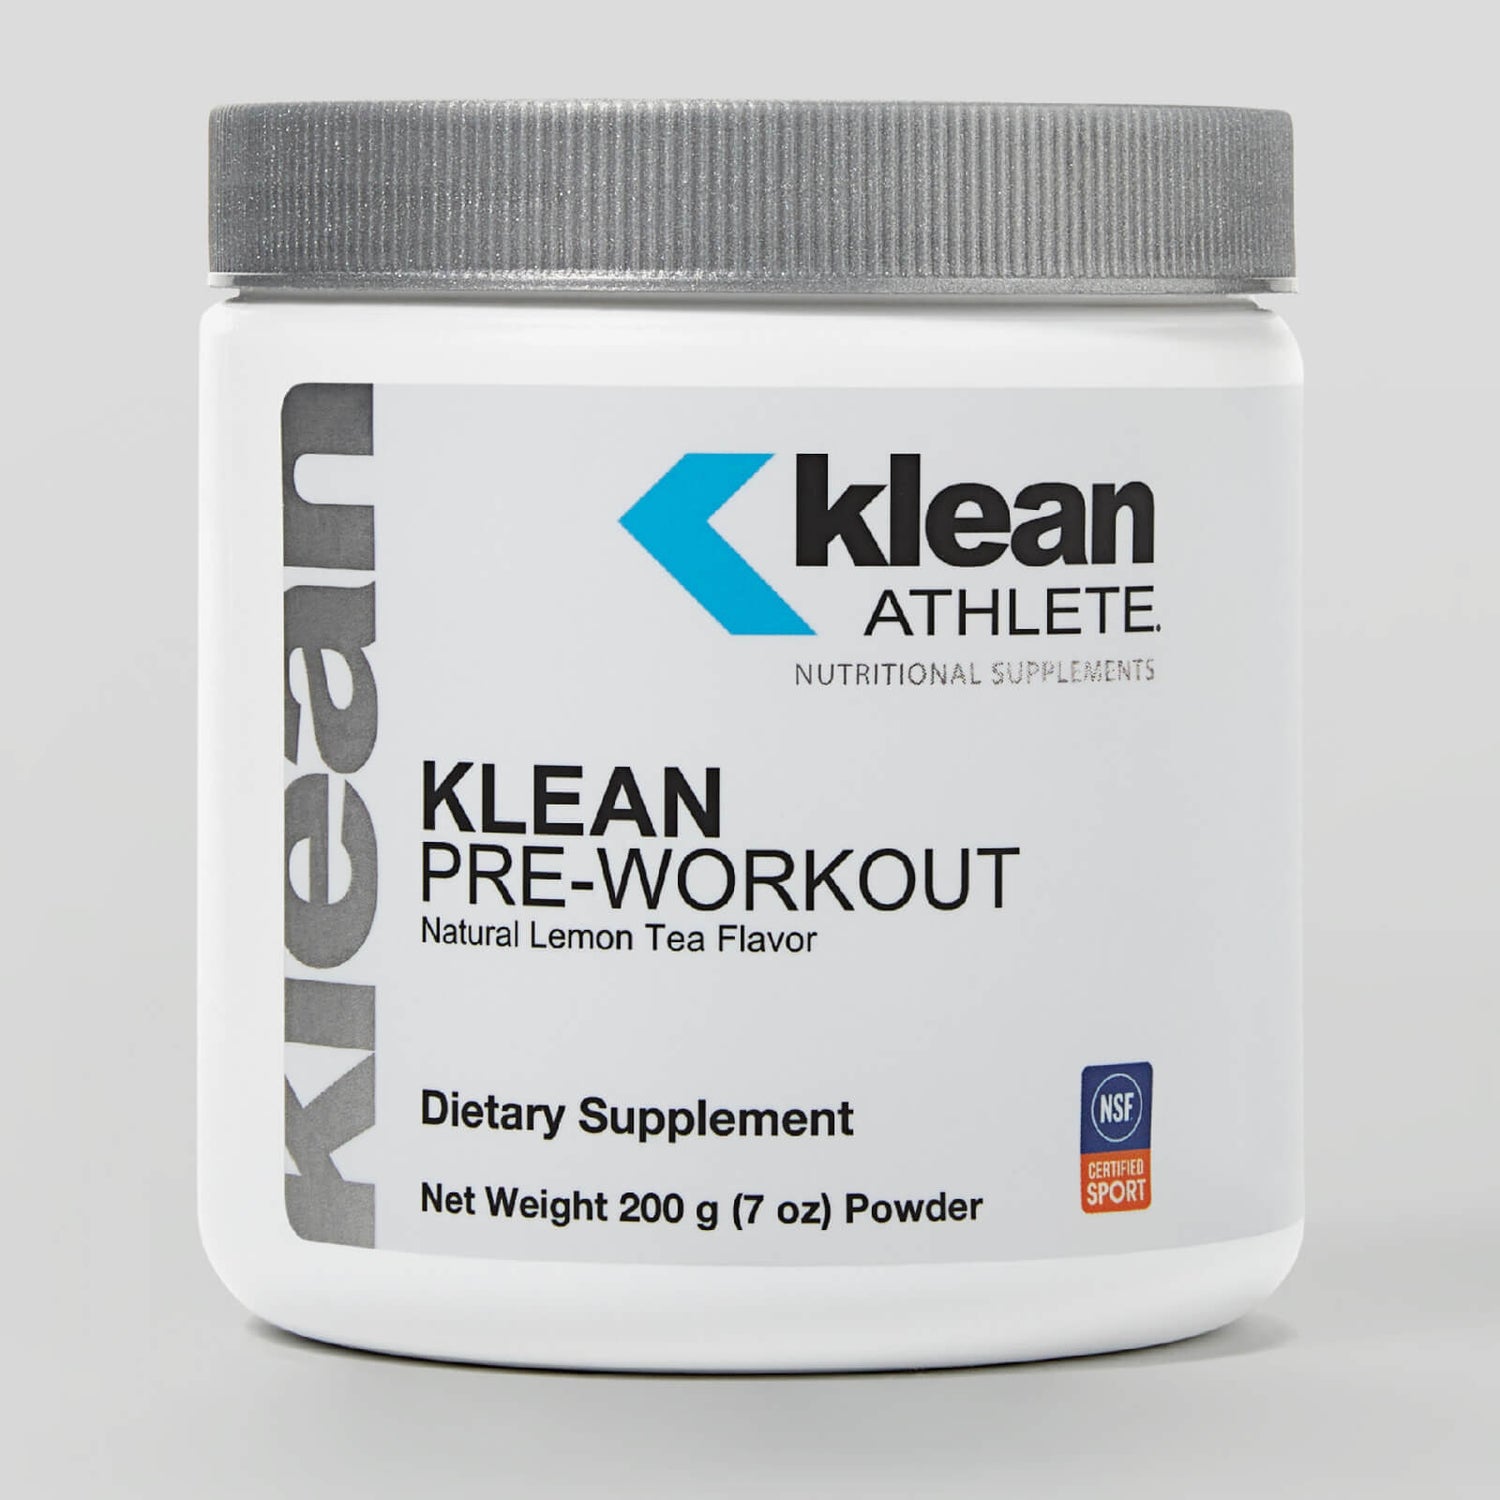 Klean Pre-Workout